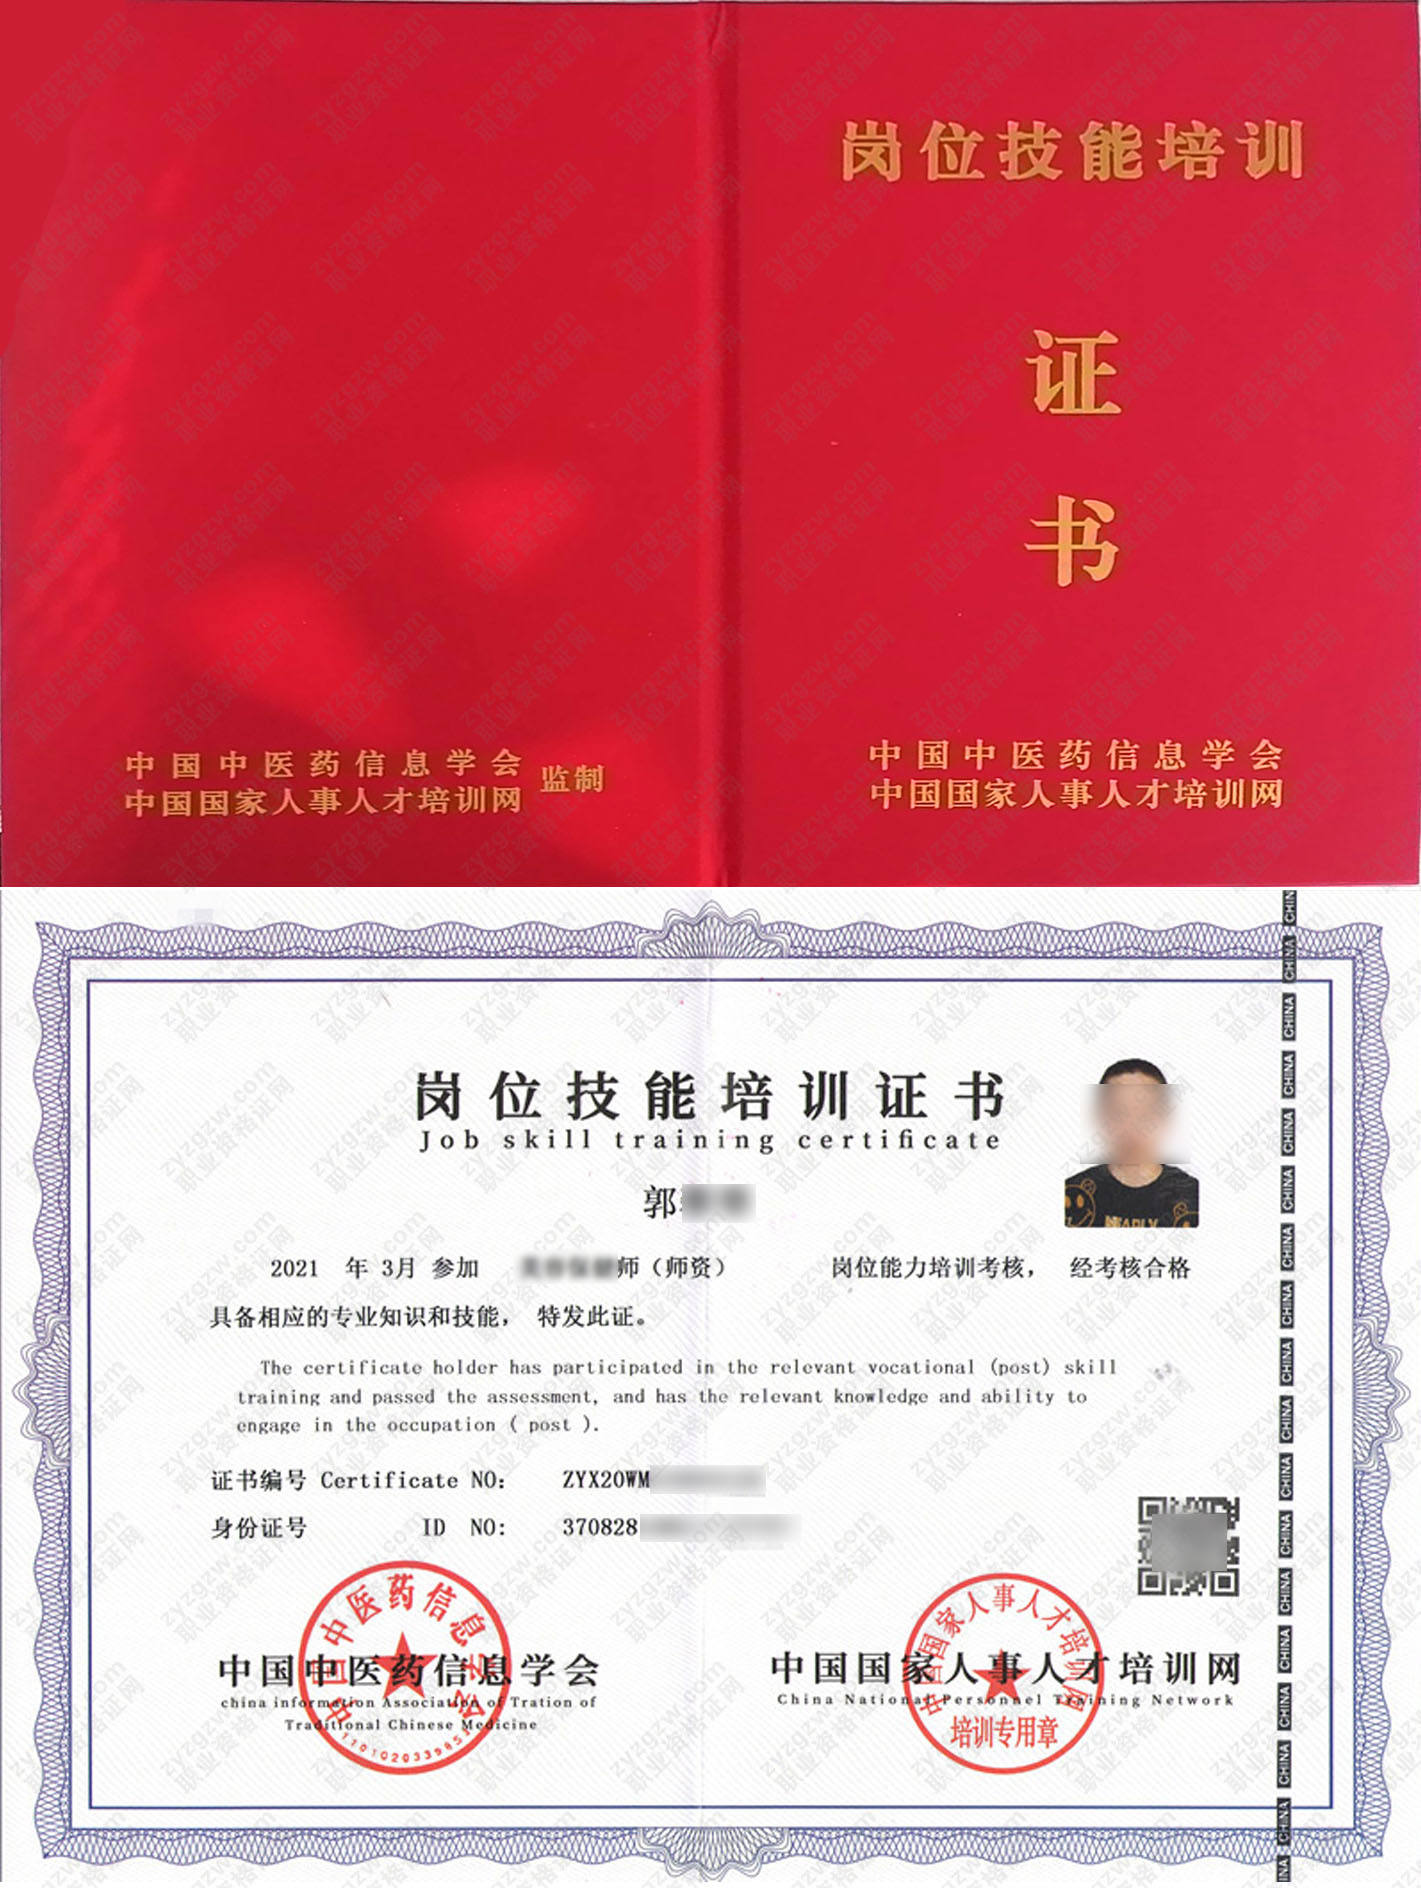 中国国家人事人才培训网 残疾人照护师 岗位技能培训证书